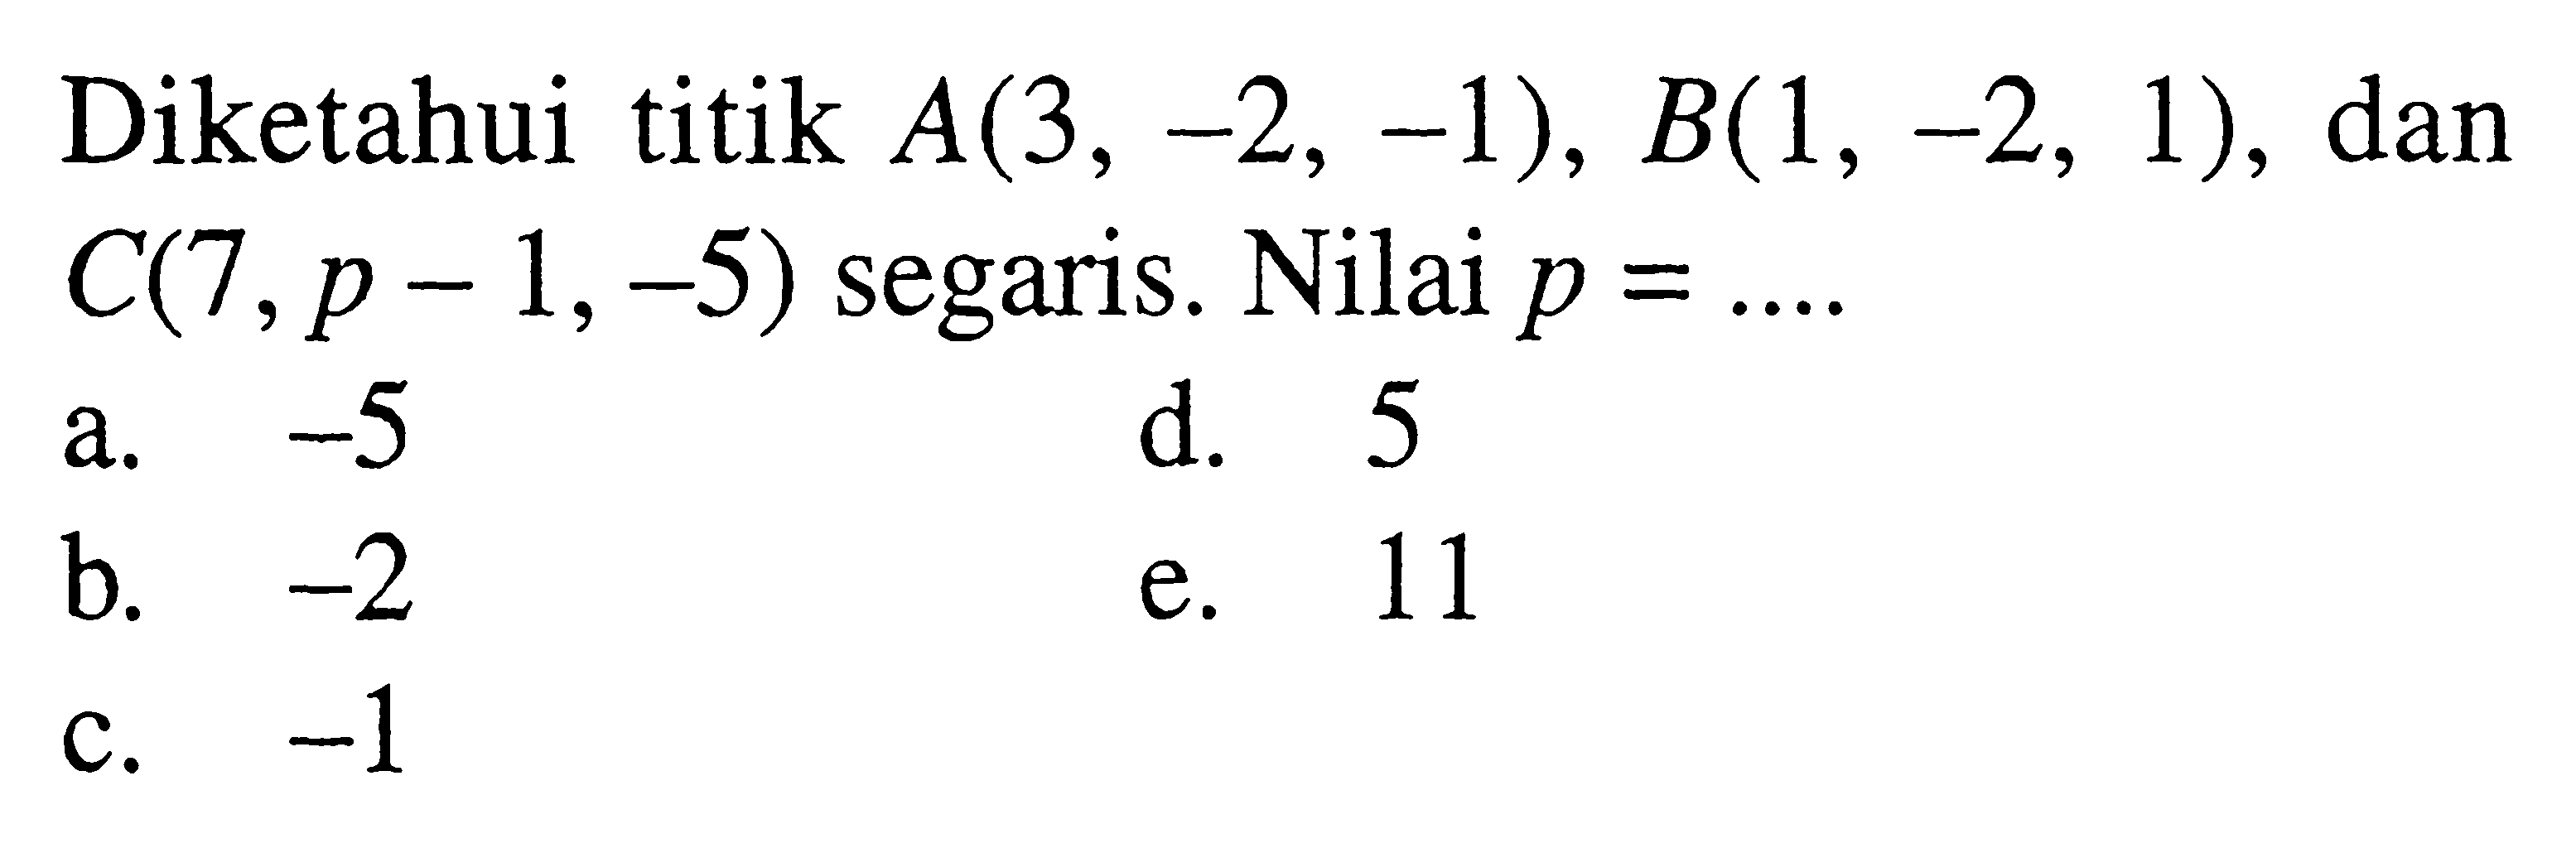 Diketahui titik A(3,-2,-1), B(1,-2,1), dan C(7,p-1,-5) segaris. Nilai p= ...